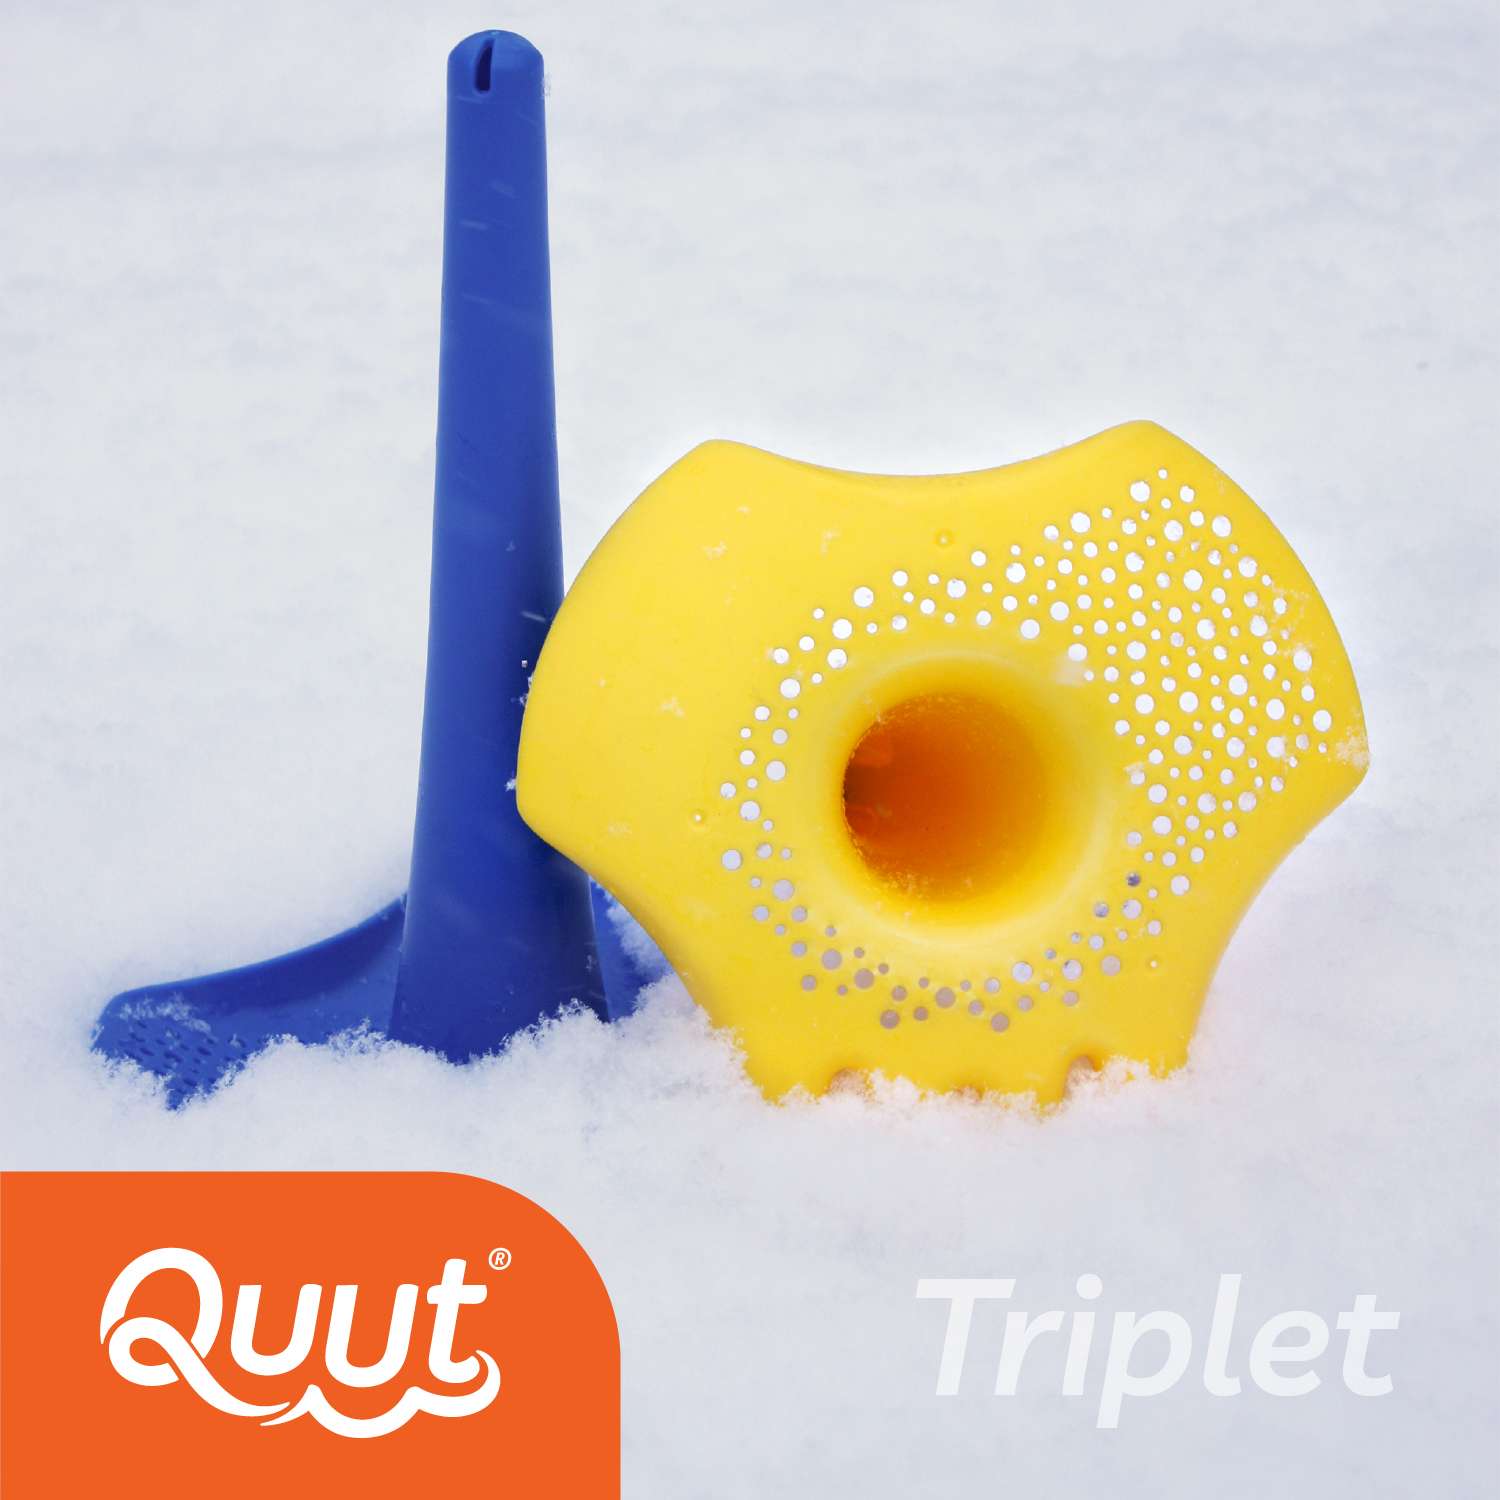 Игрушка для песка и снега QUUT многофункциональная Triplet Очень оранжевый - фото 6